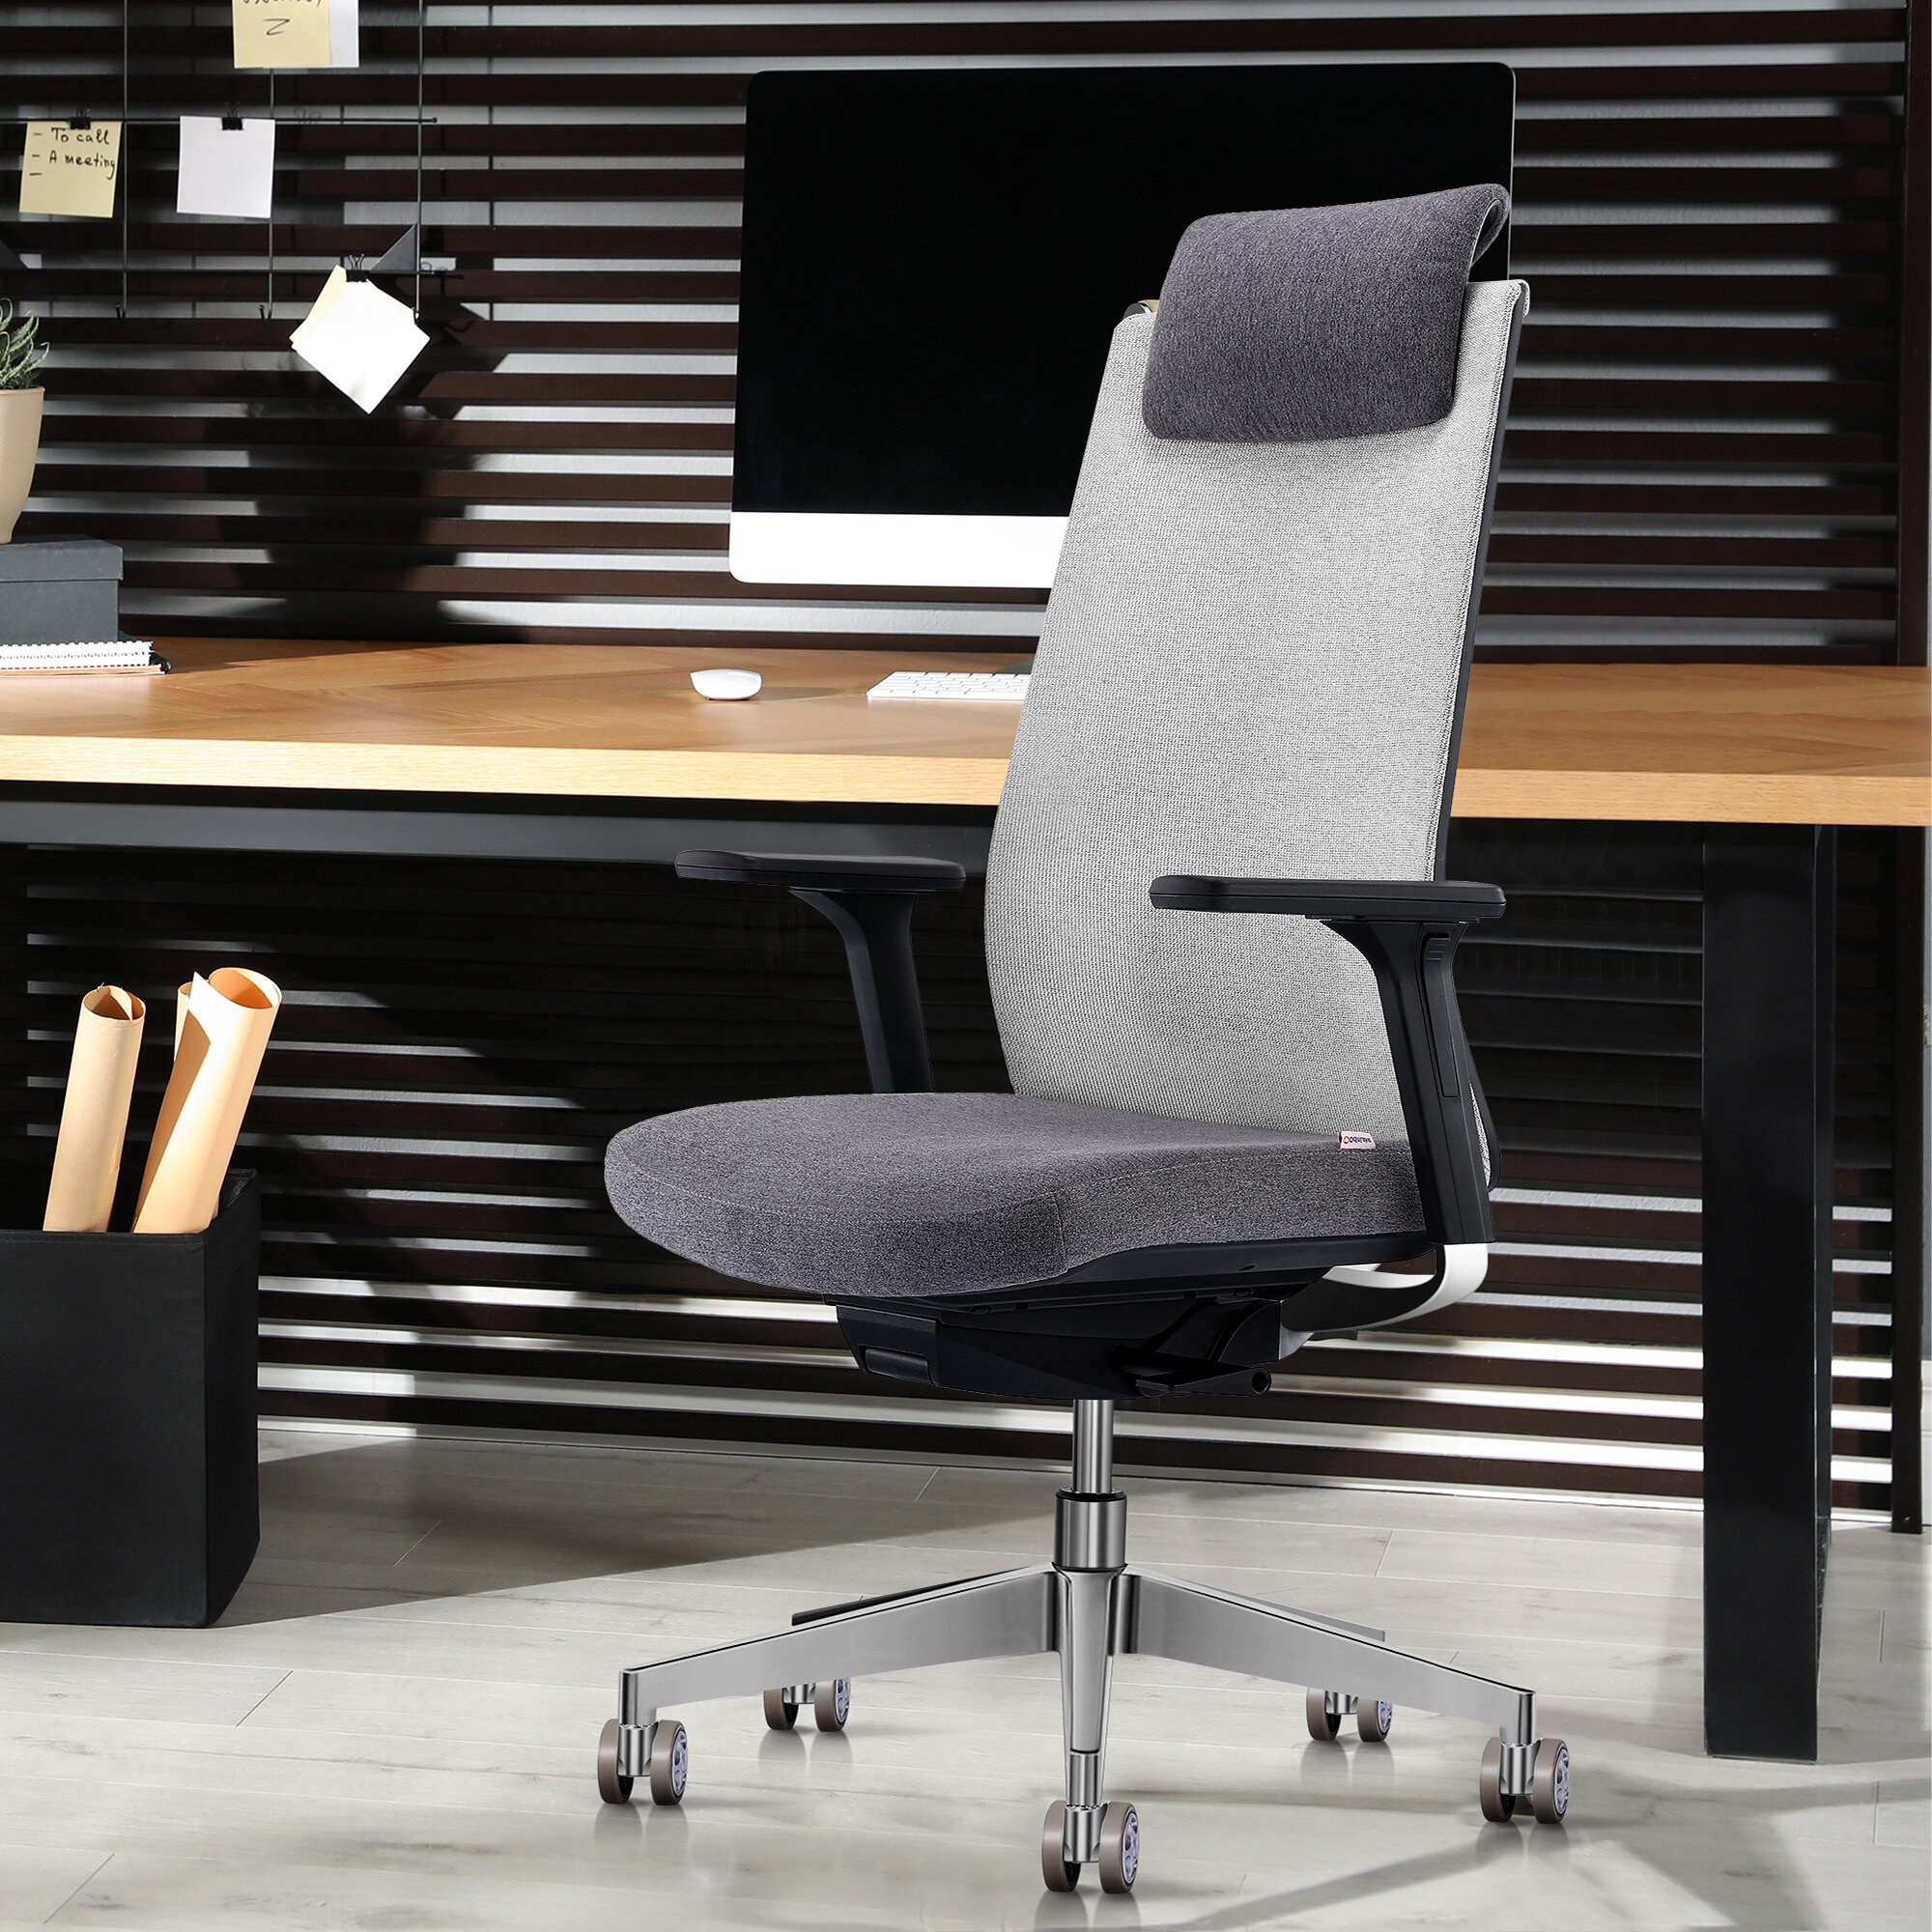 https://assets.wfcdn.com/im/55185624/compr-r85/1802/180274509/ergonomic-task-chair-with-headrest.jpg